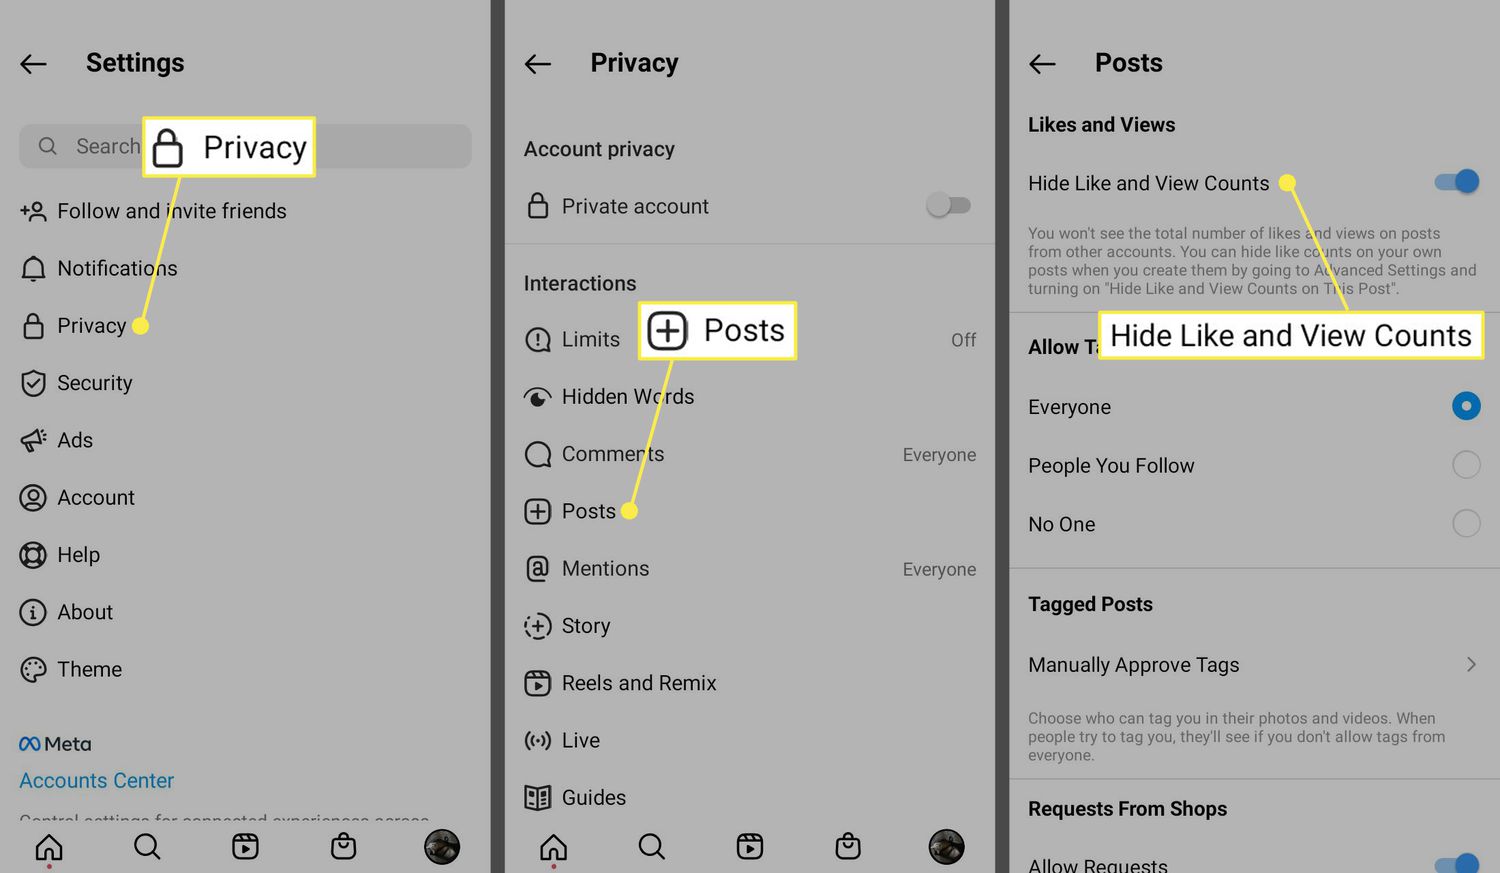 Soukromí, příspěvky a počet skrytí lajků a zobrazení v aplikaci Instagram